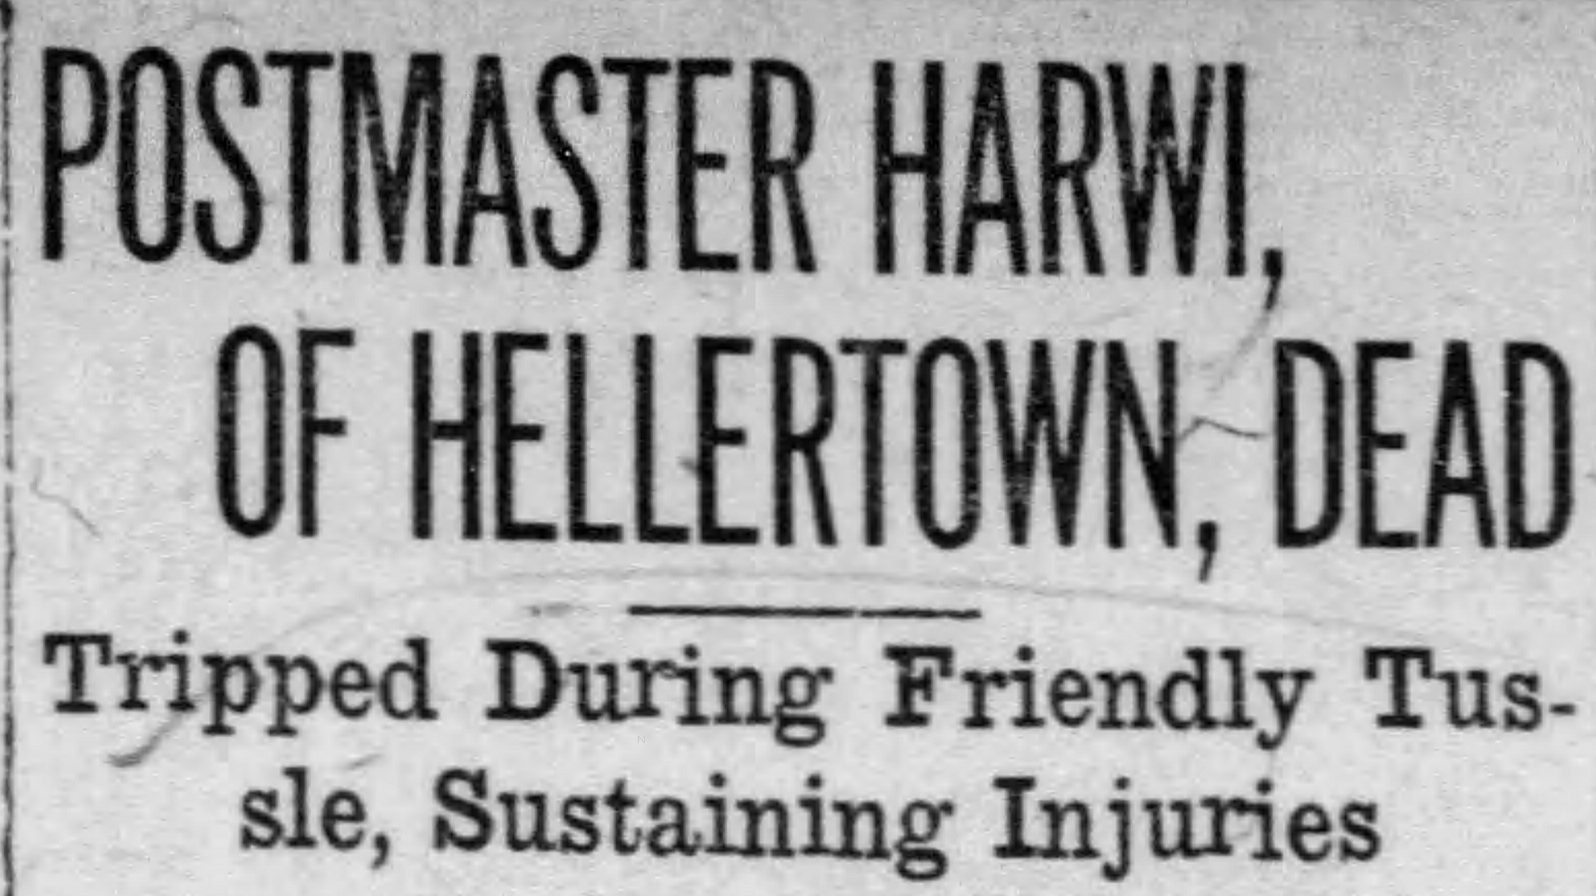 Harwi Hellertown Postmaster